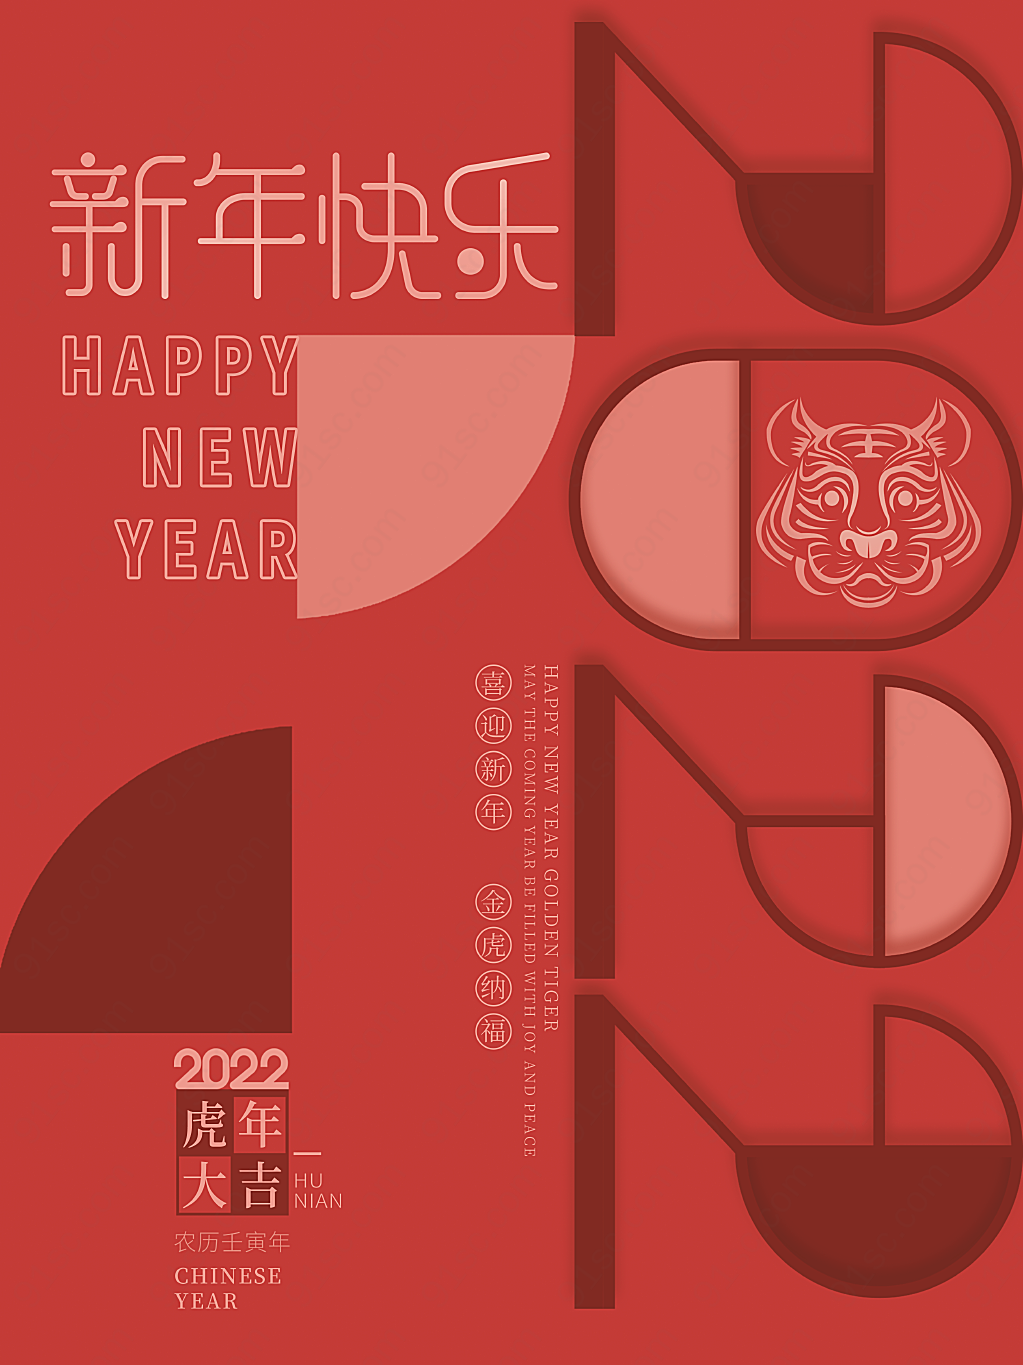 简约创意字体设计新年虎年节日节日海报